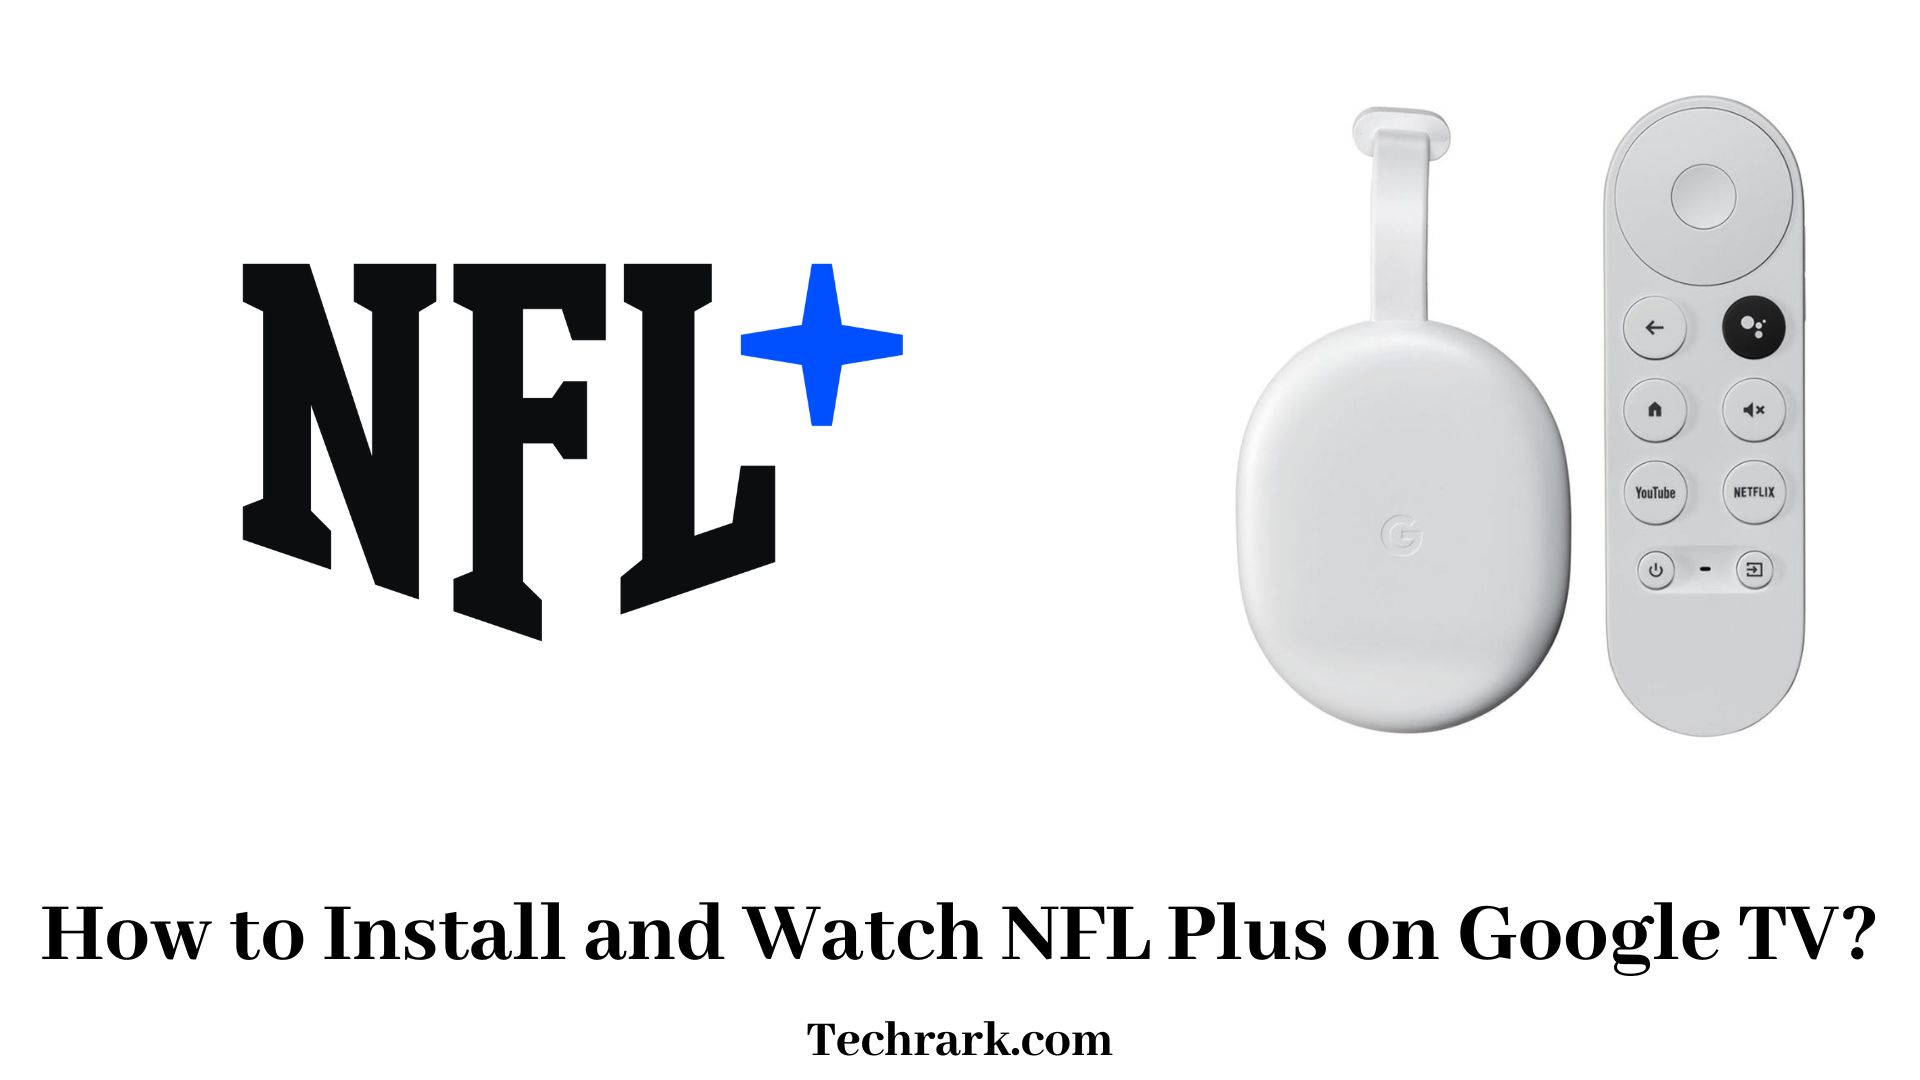 NFL Plus on Google TV